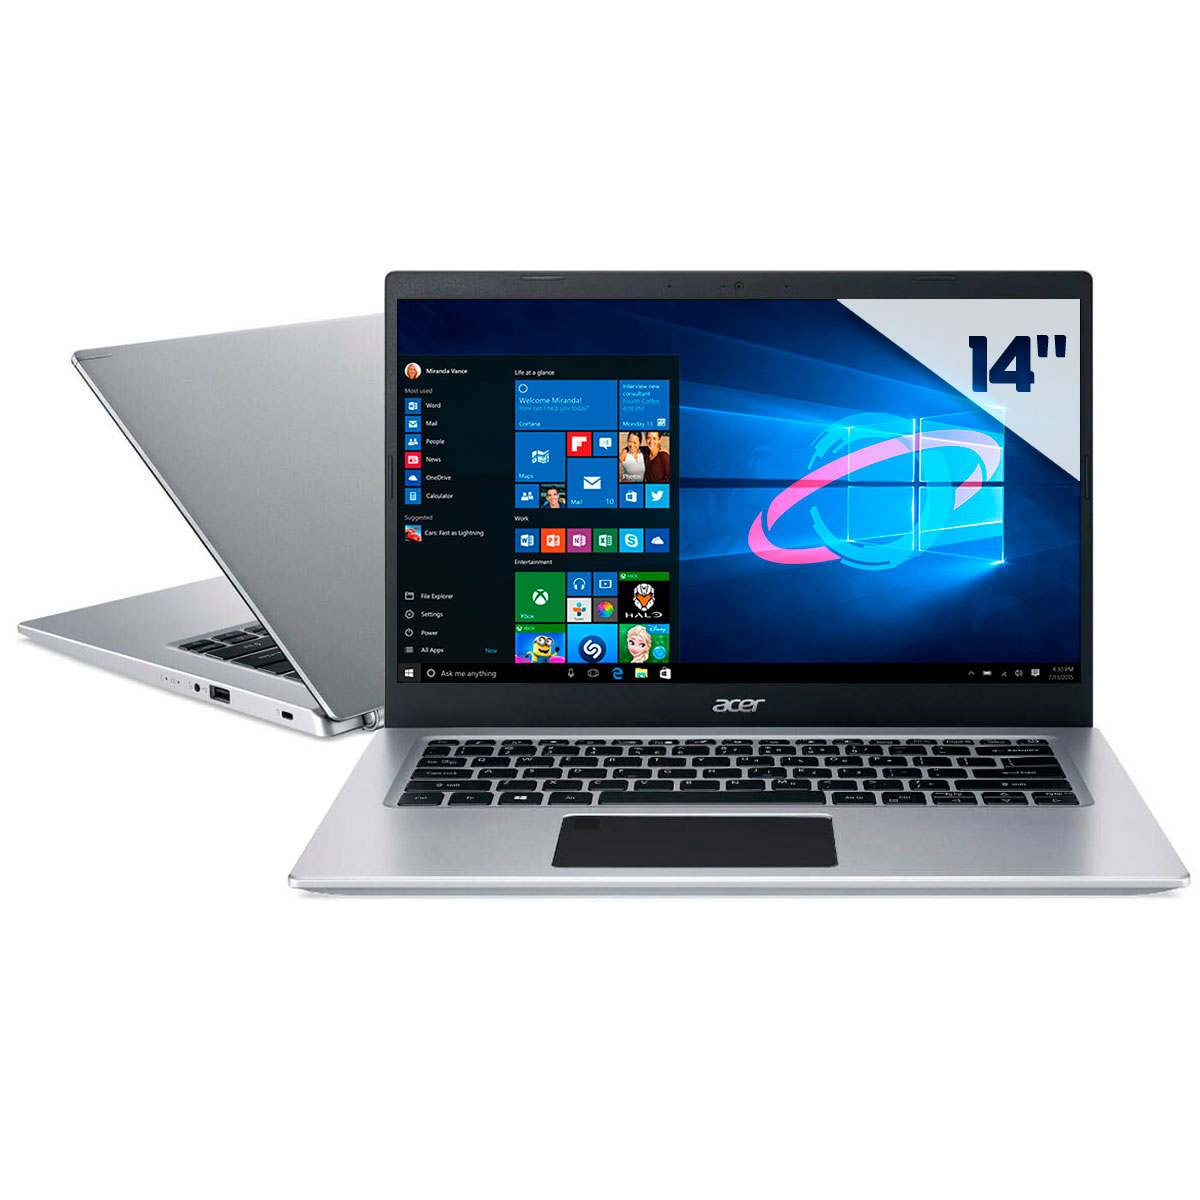 Notebook Acer Aspire A514-53-5239 - Intel i5 1035G1, RAM 4GB, SSD 256GB, Tela 14